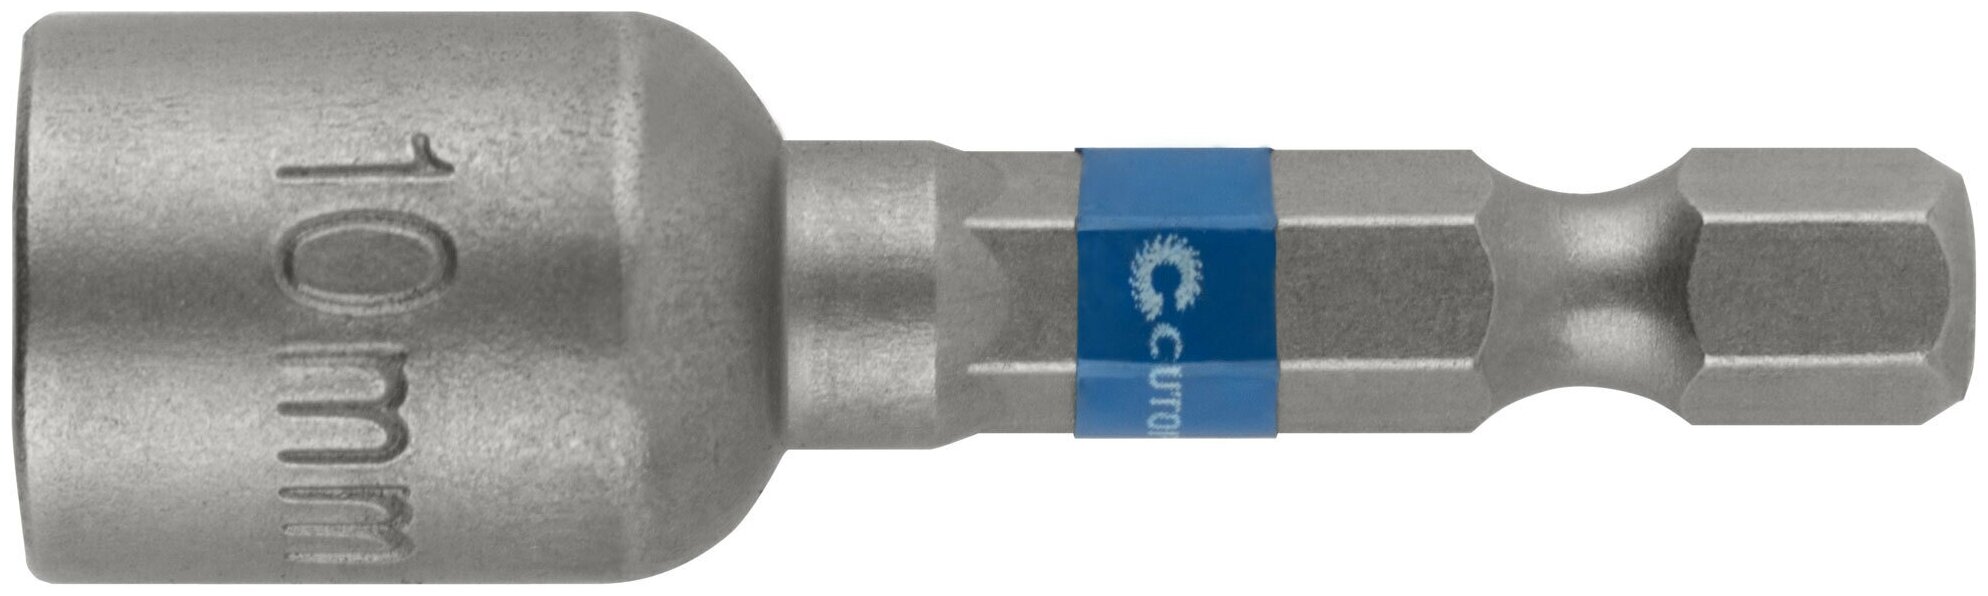 Набор бит с торцевыми магнитными головками 10 мм, 2 шт, CUTOP Profi, 48 мм 83-552